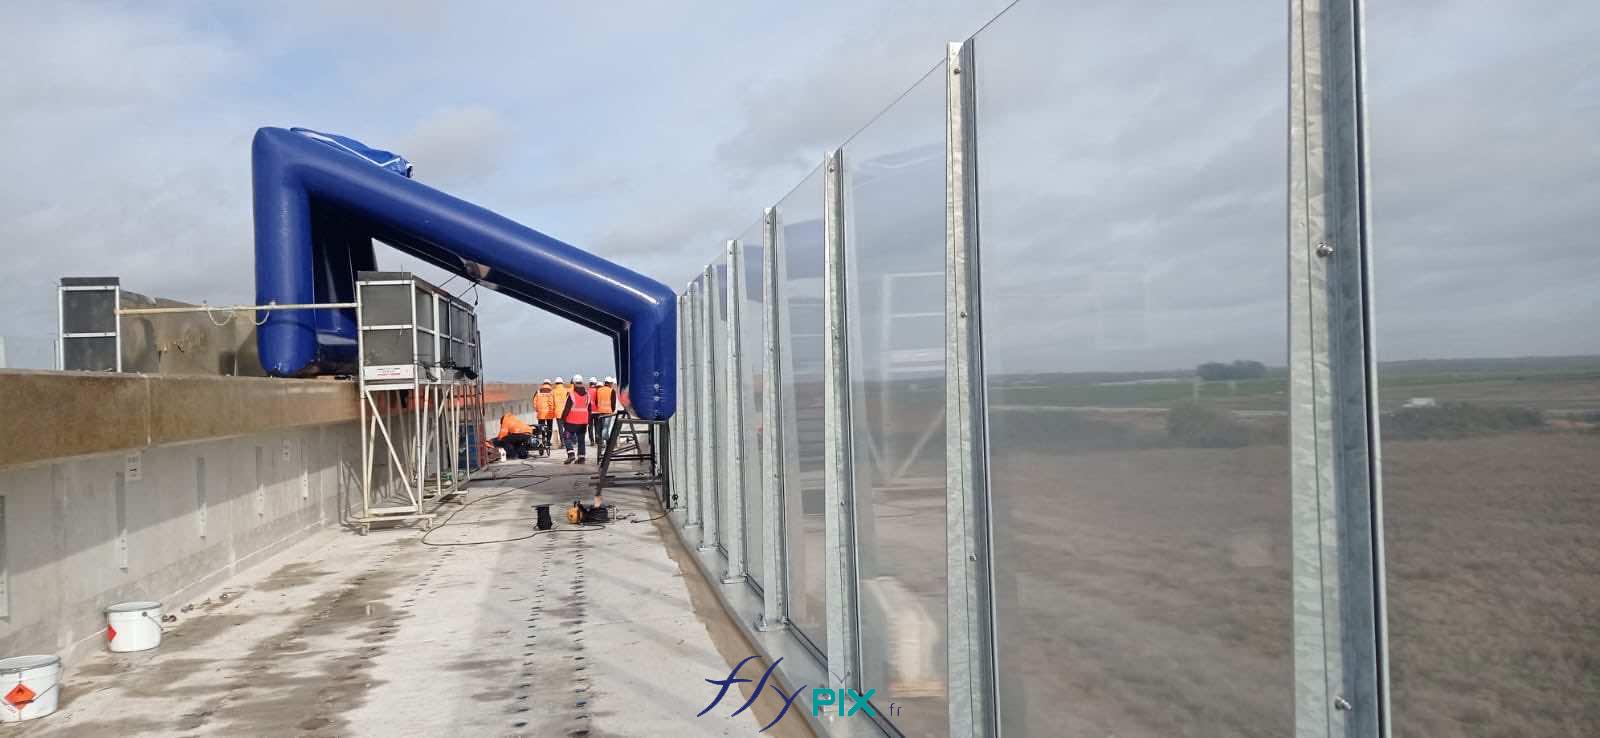 FlyPix abri tente gonflable air captif ventile pompe turbine enveloppe pvc 045 060mm chantier viaduc EUROVIA 1